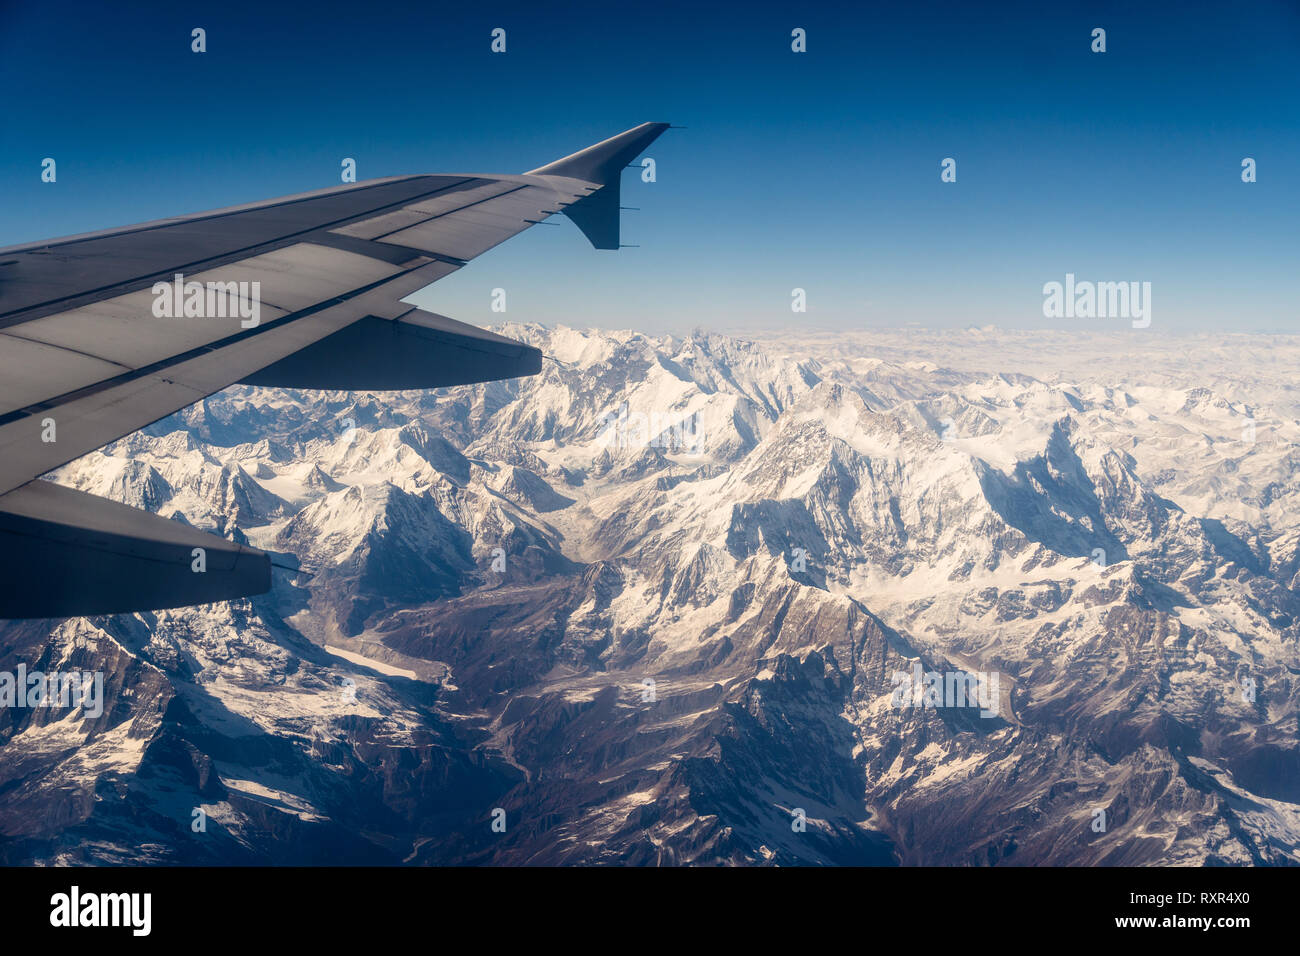 Vista aerea del Snow capped Himalaya montagna in Nepal da un piano su una soleggiata giornata invernale Foto Stock